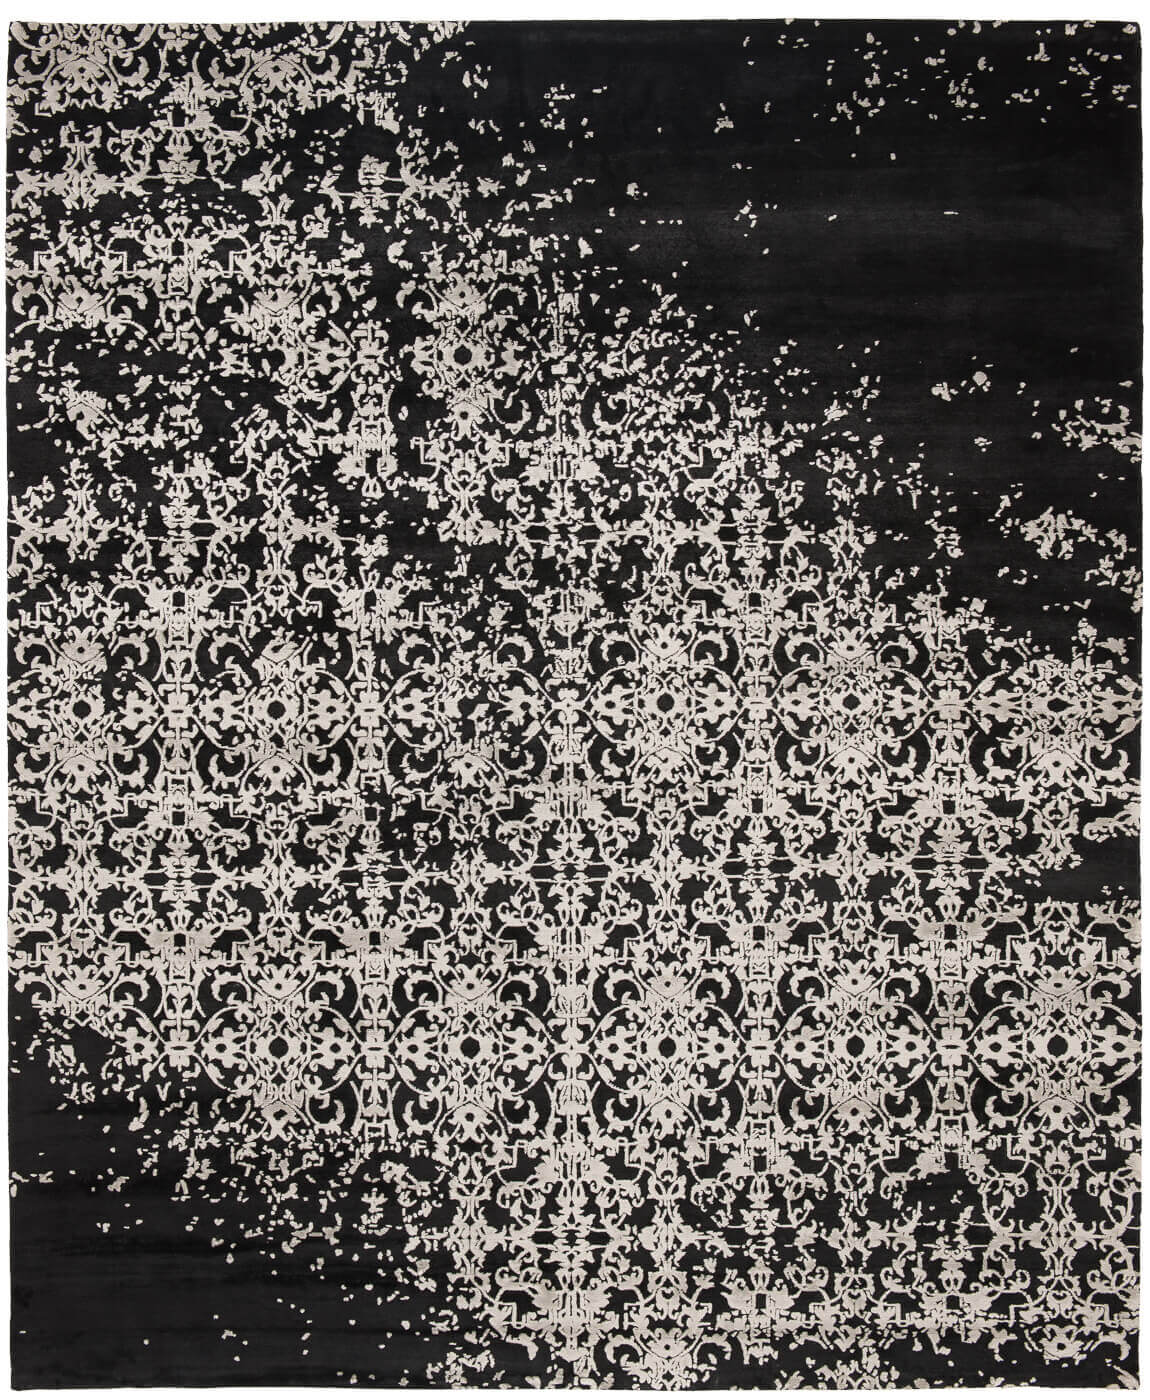 Элитный ковер Milano Raved черно-белый германского бренда Jan Kath